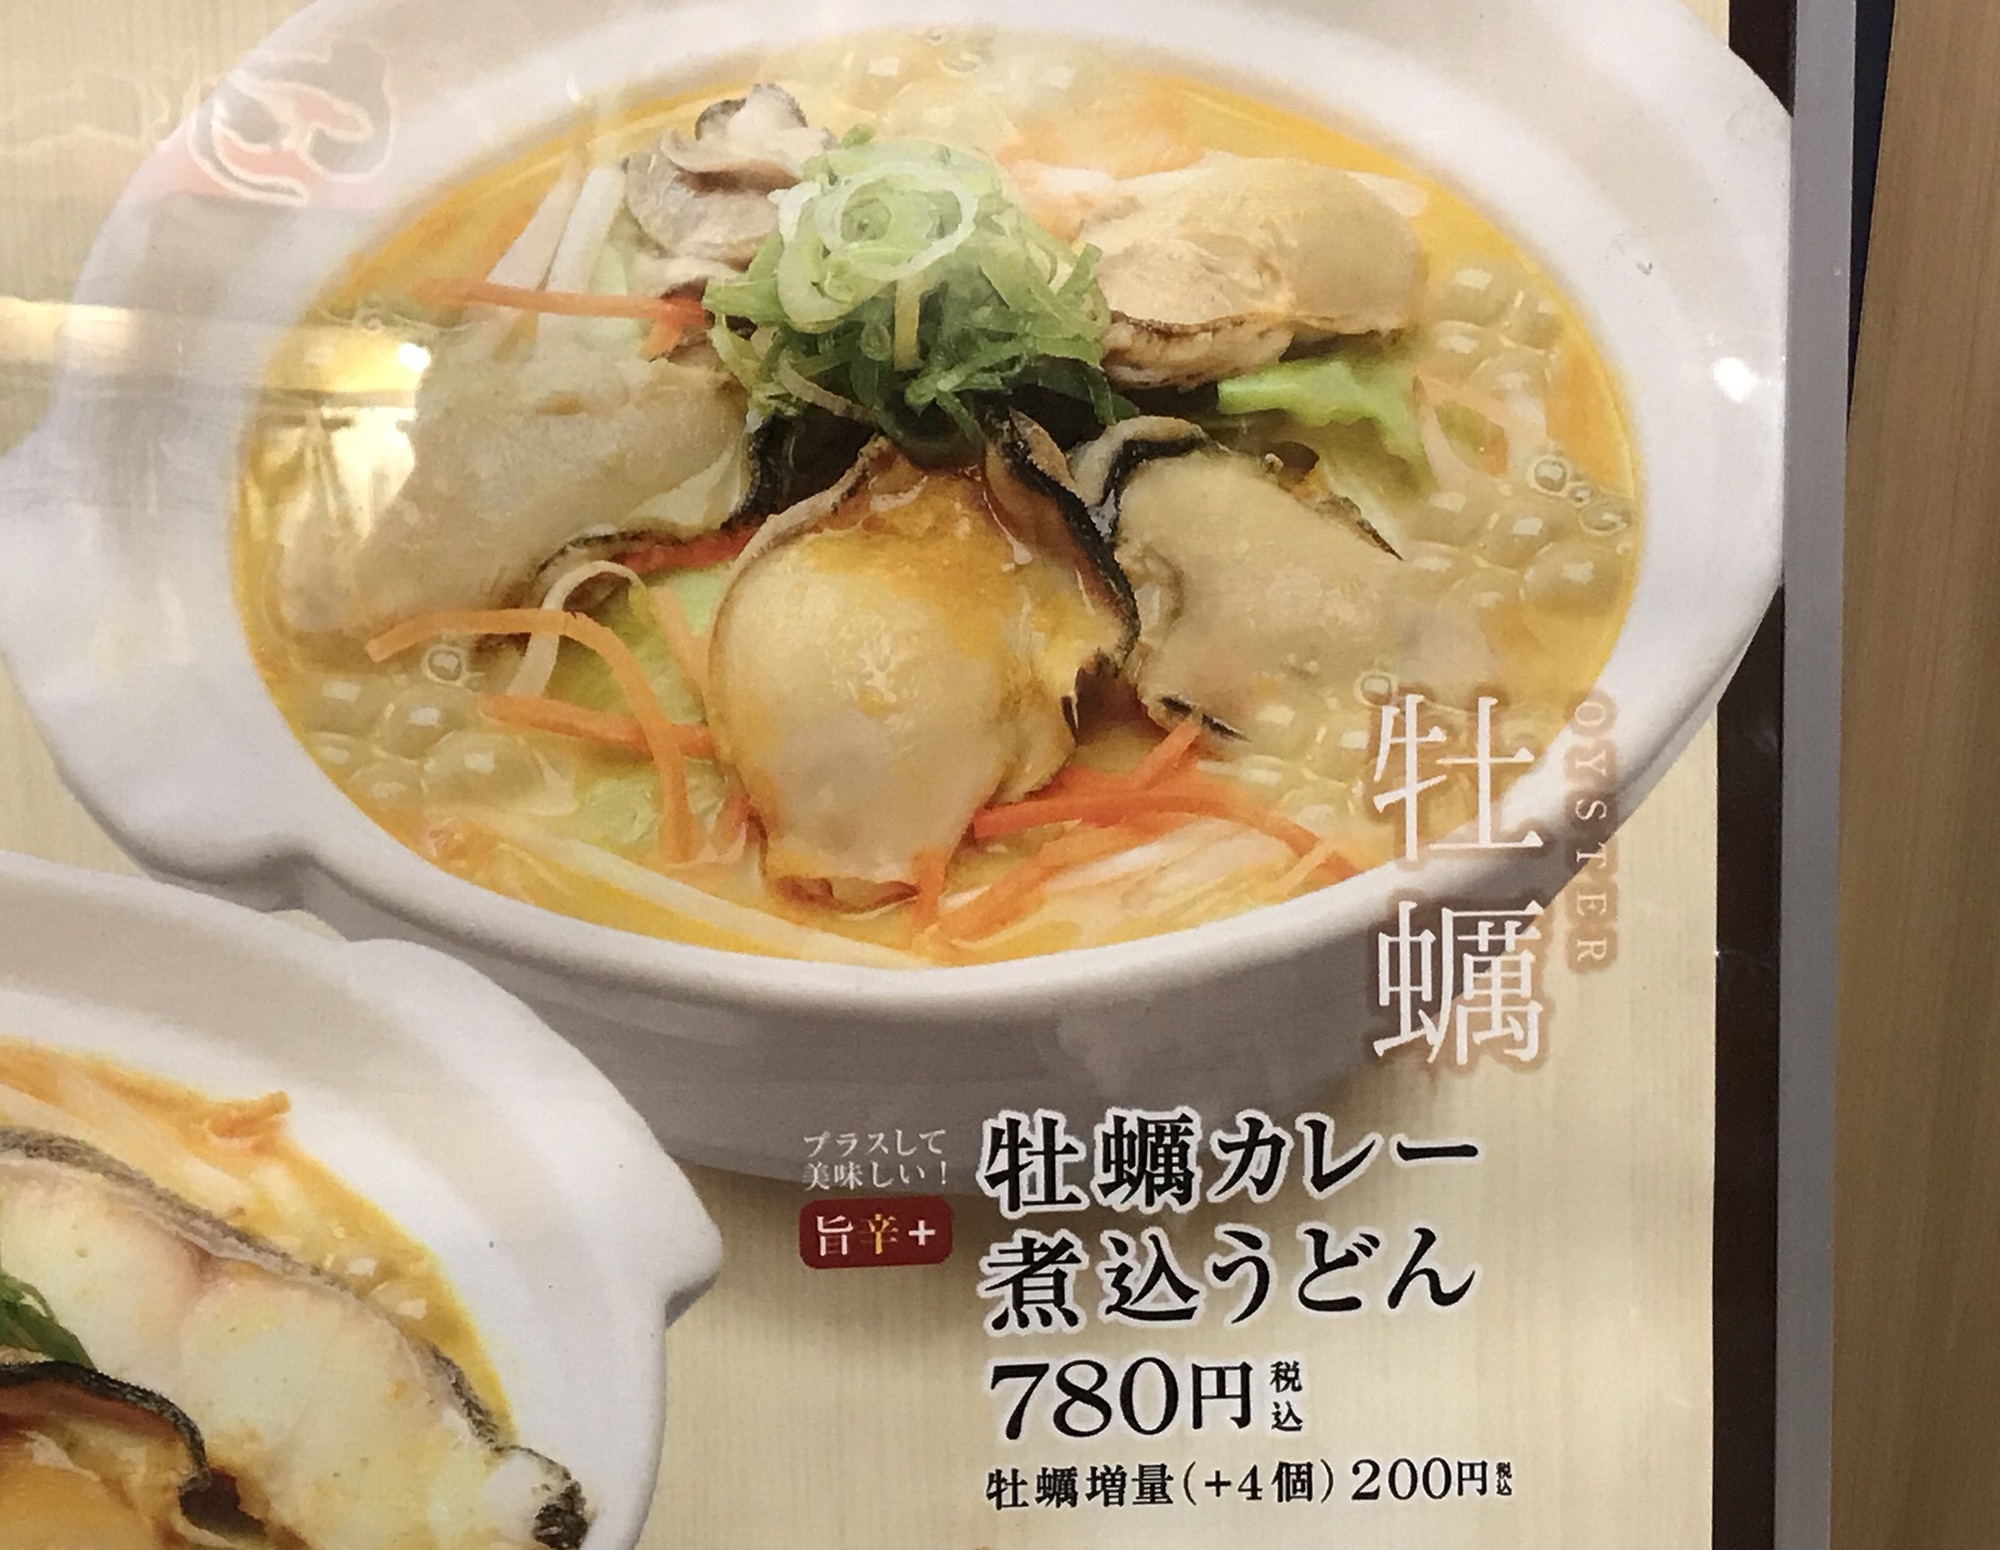 カレーうどん千吉 で食べる 牡蠣カレー煮込みうどん 名古屋発 街とりっぷマガジン Pon Po ポンポ